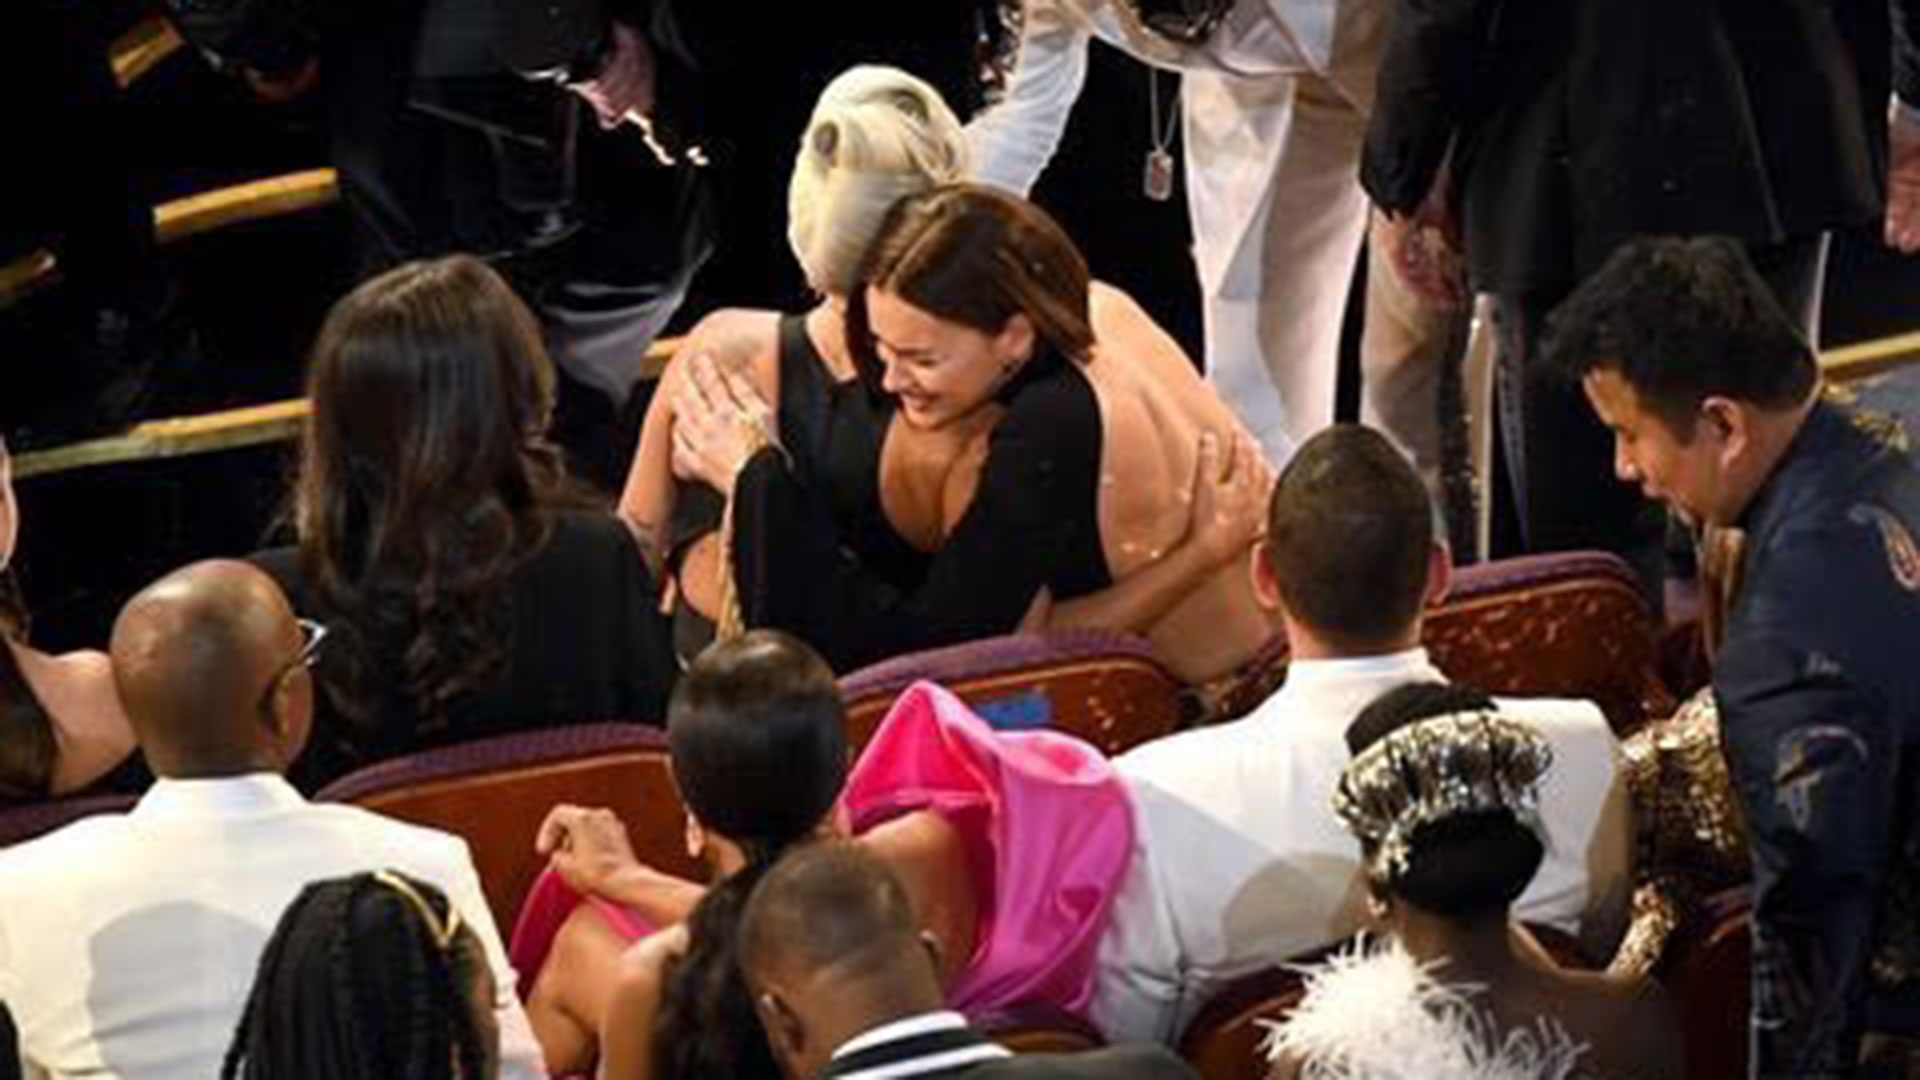 El abrazo de Irina Shayk a Lady Gaga tras la actuación con Bradley Cooper en los premios Oscar